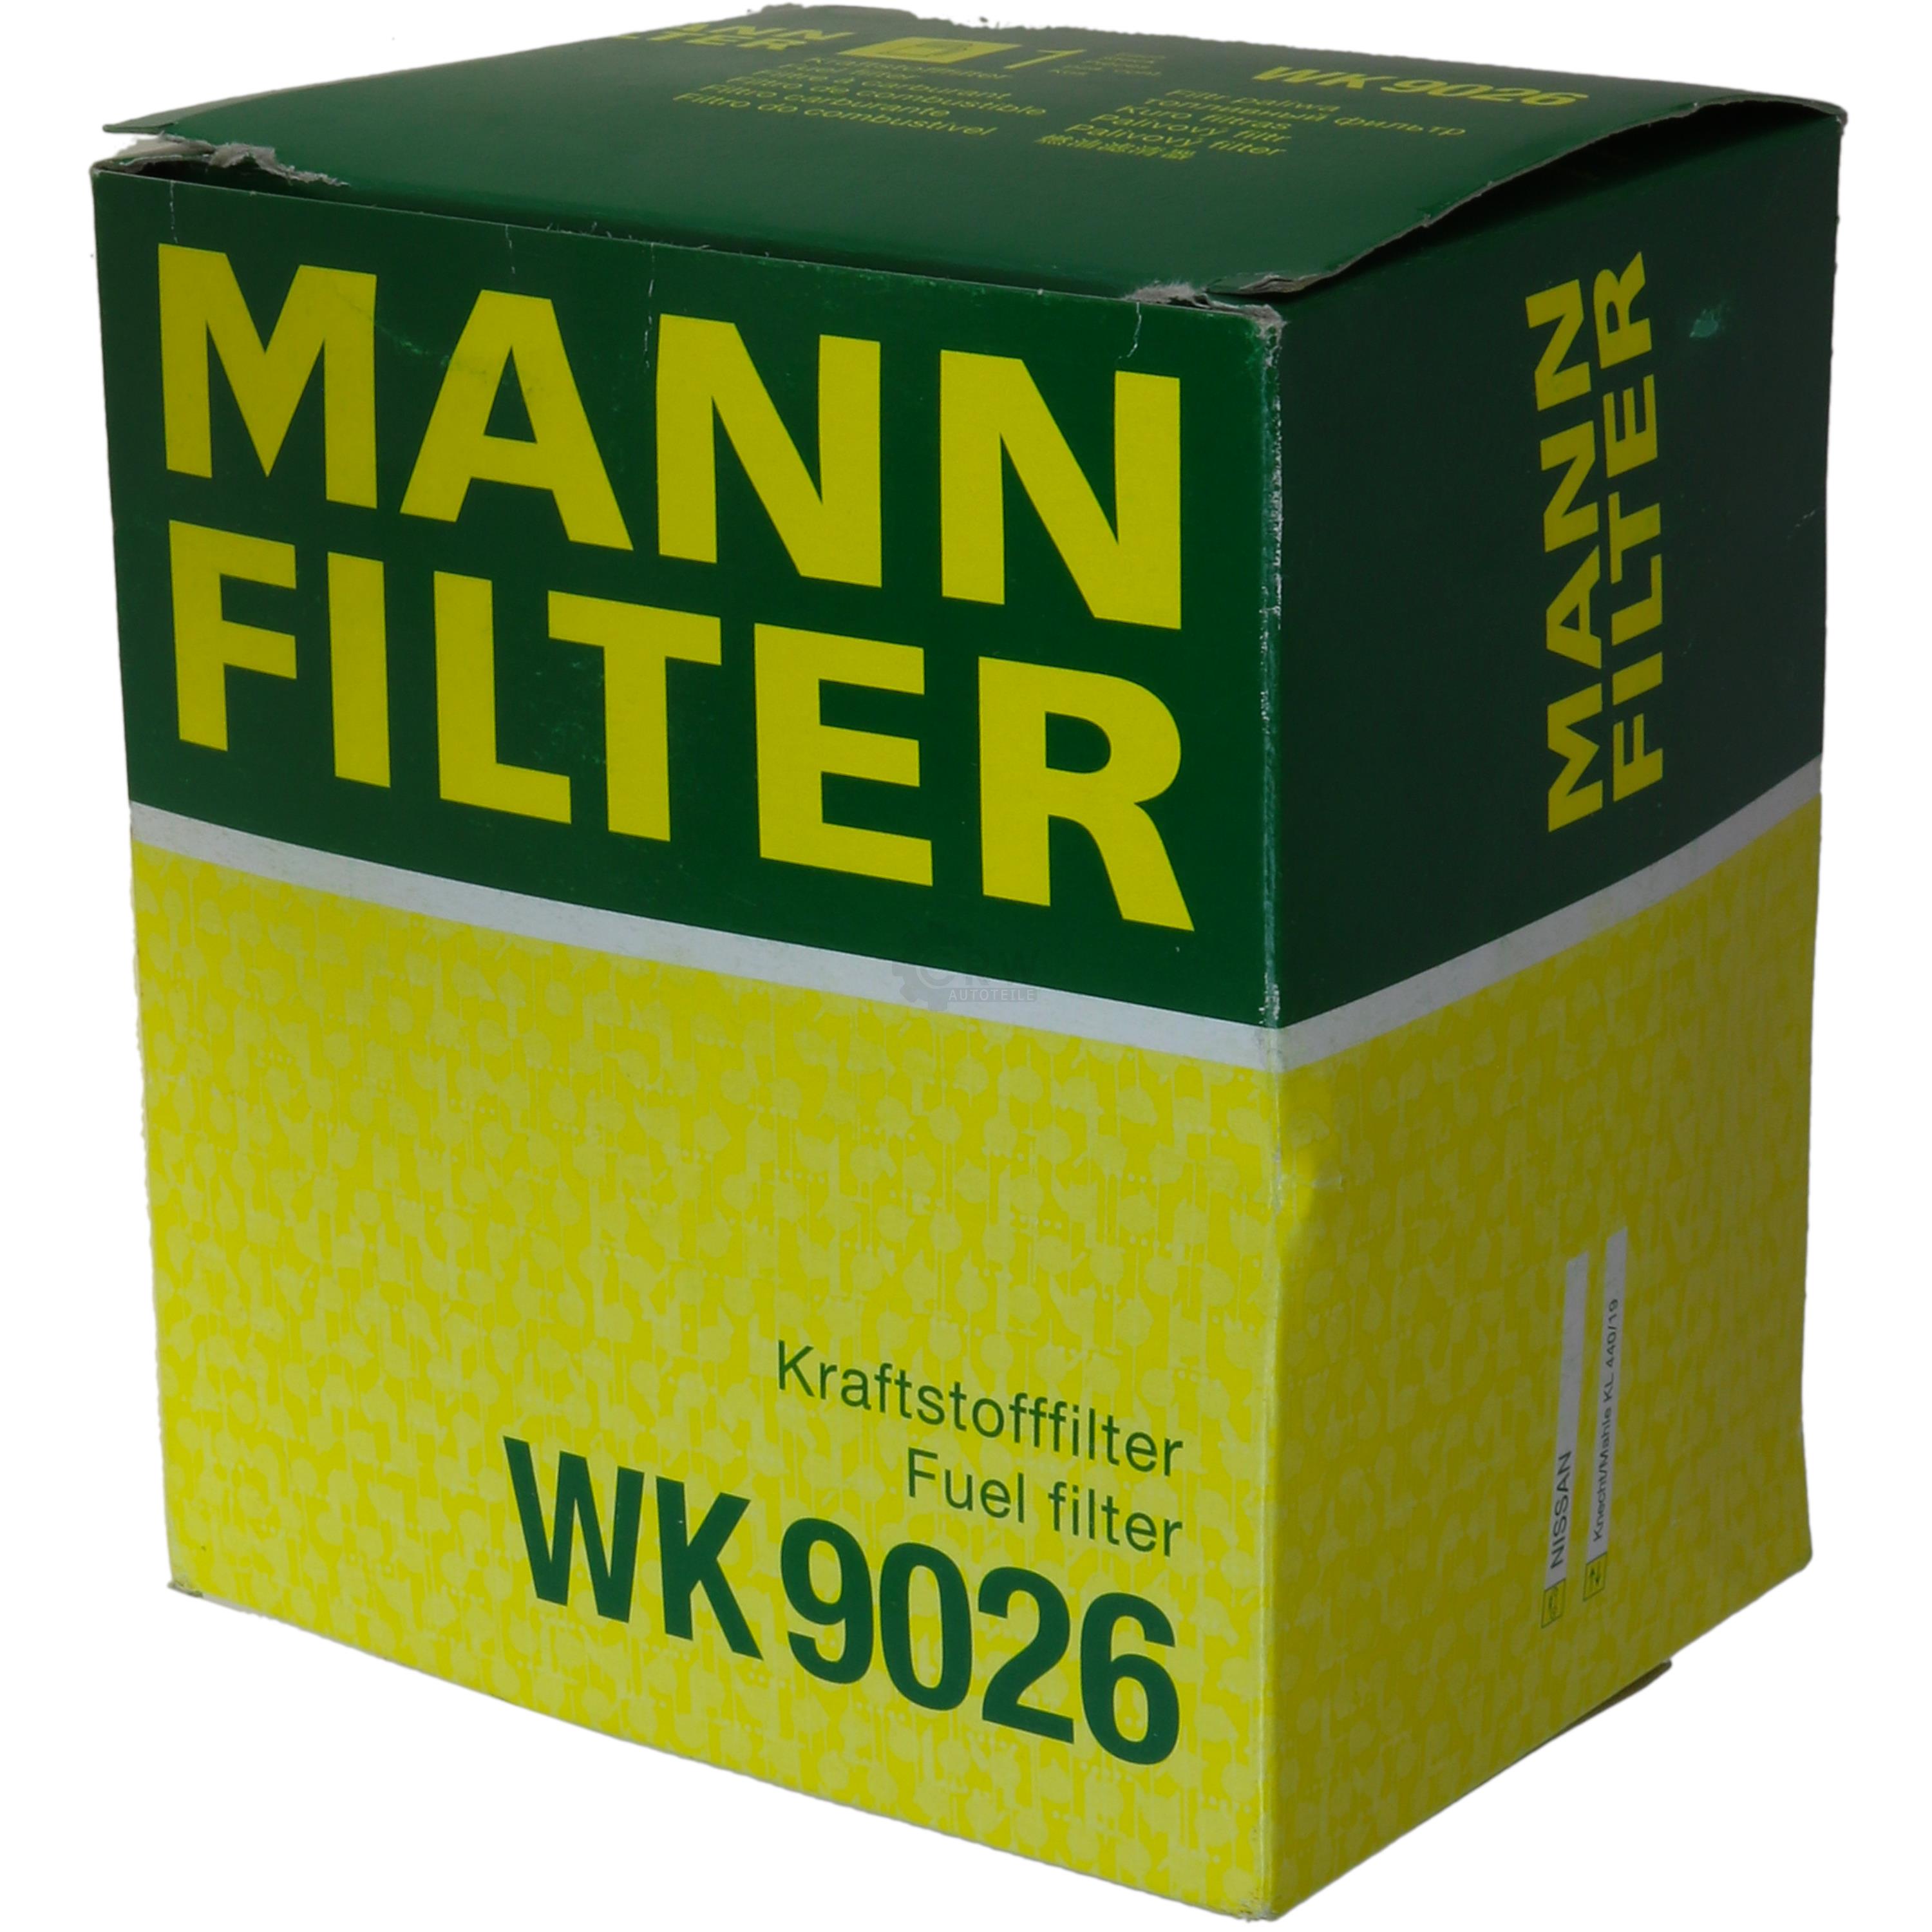 MANN-FILTER Kraftstofffilter WK 9026 Fuel Filter